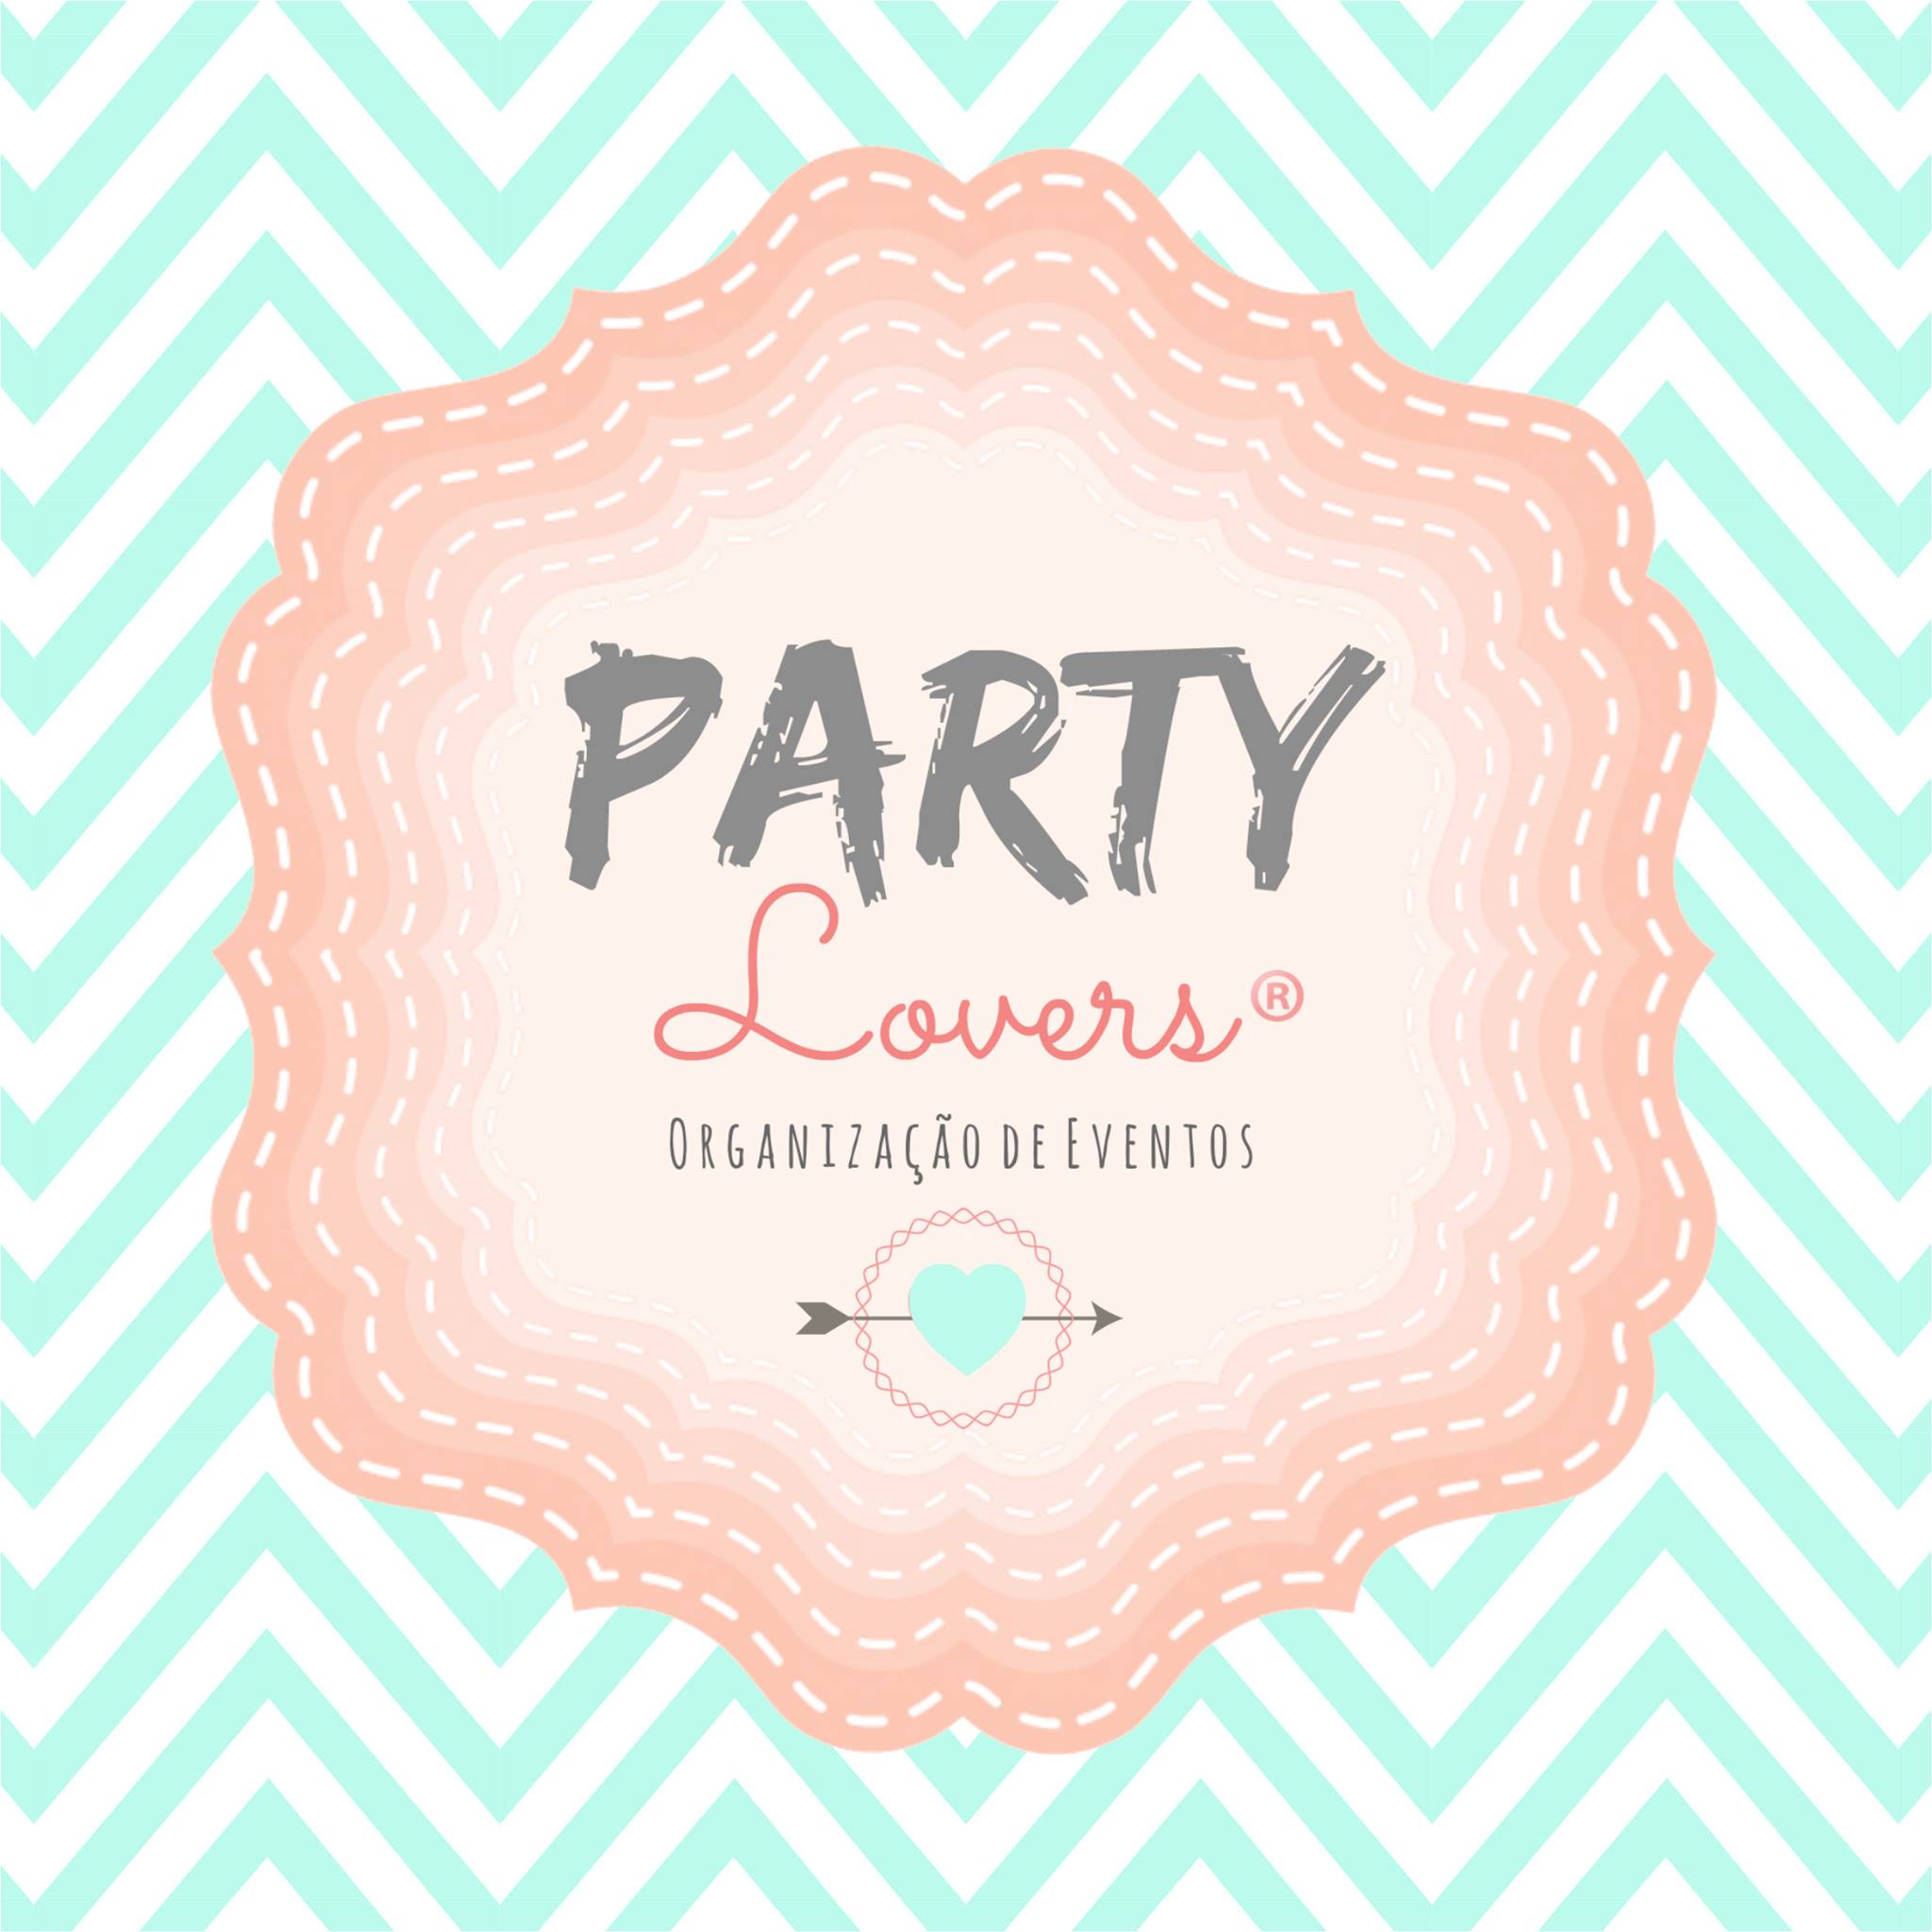 Party Lovers - Organização de Eventos